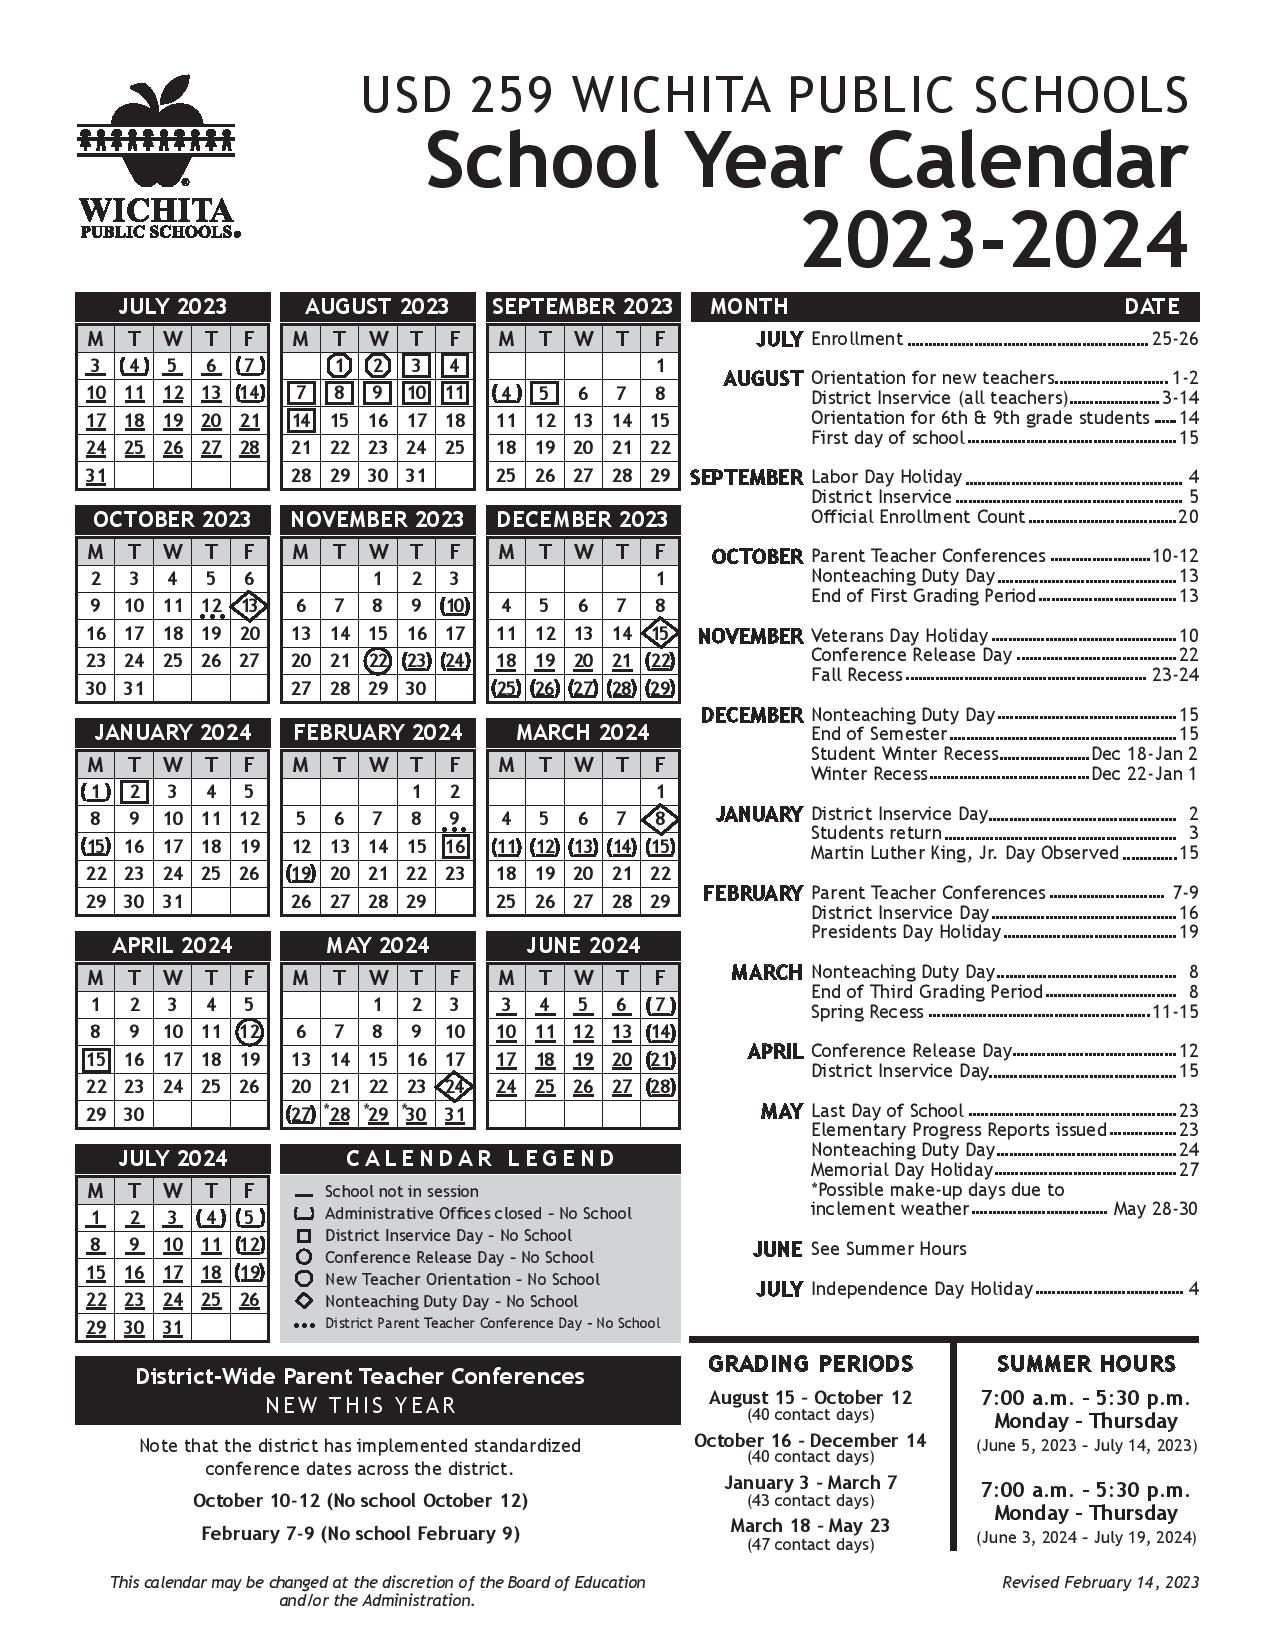 Wichita Public Schools Calendar 2024 in PDF